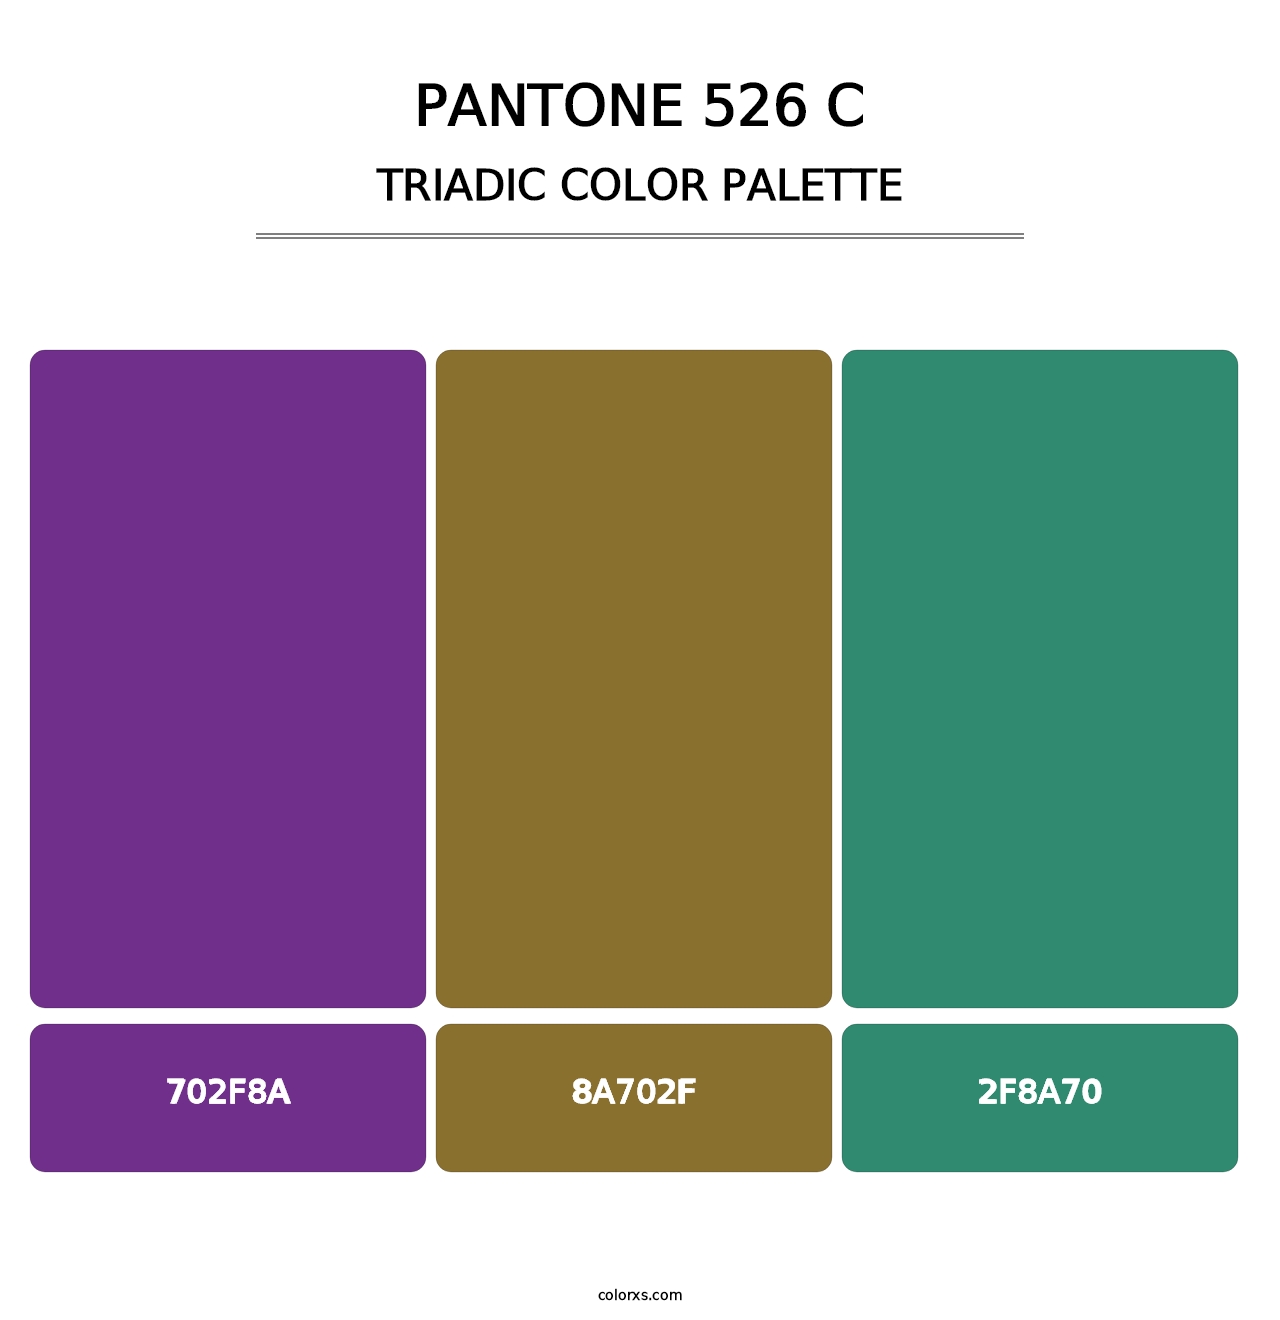 PANTONE 526 C - Triadic Color Palette